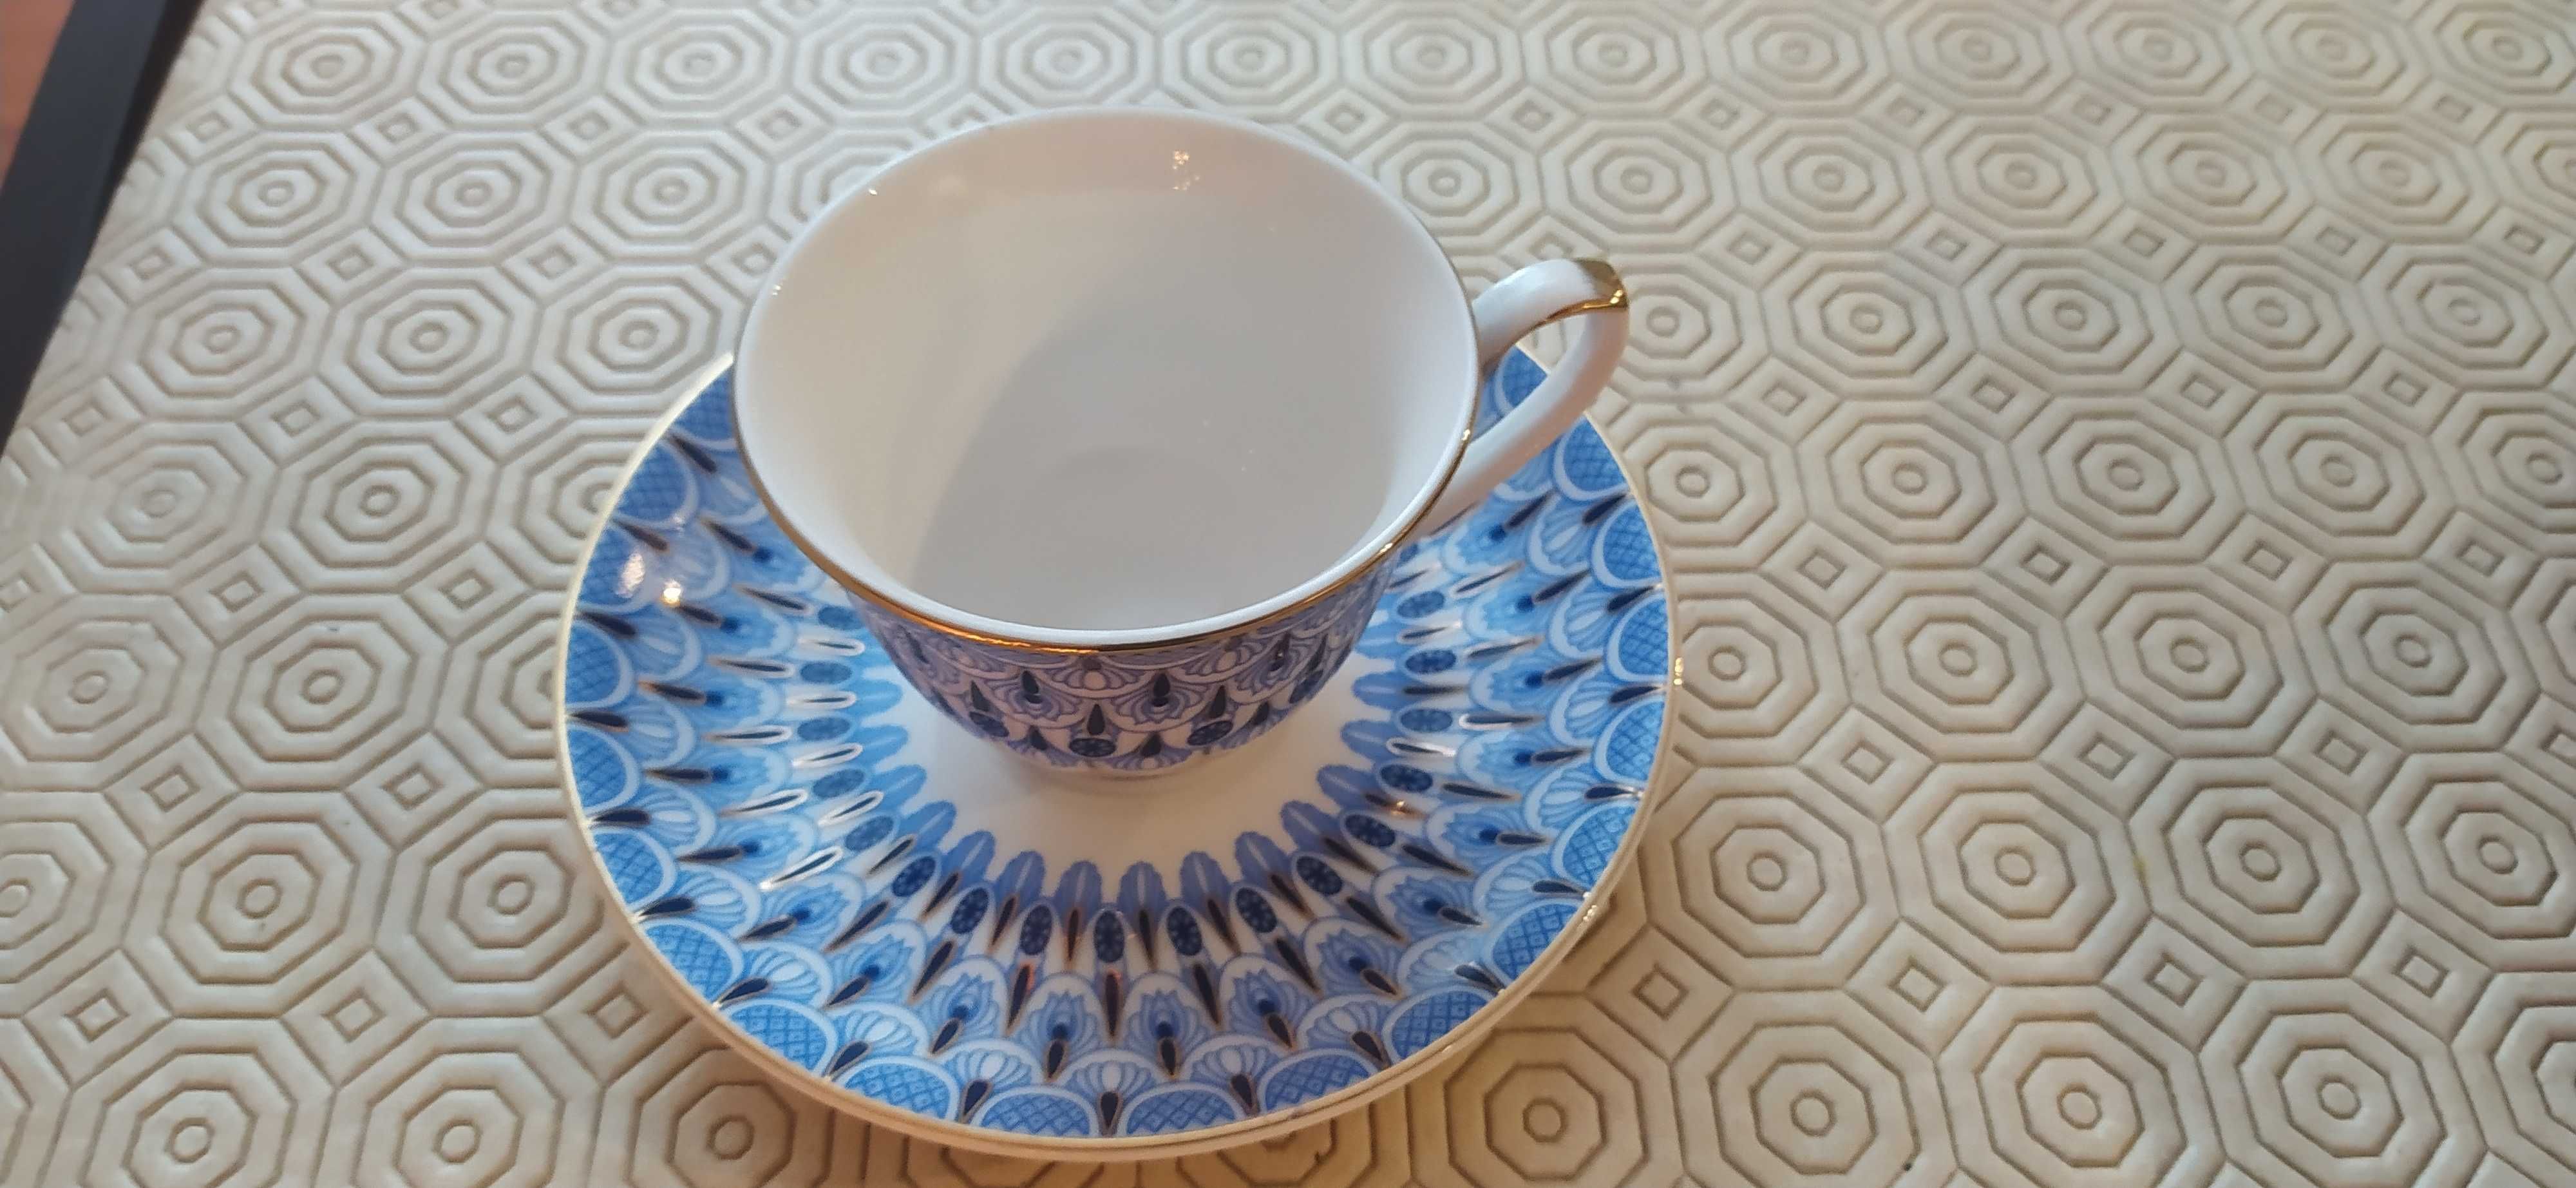 Chávenas de Porcelana